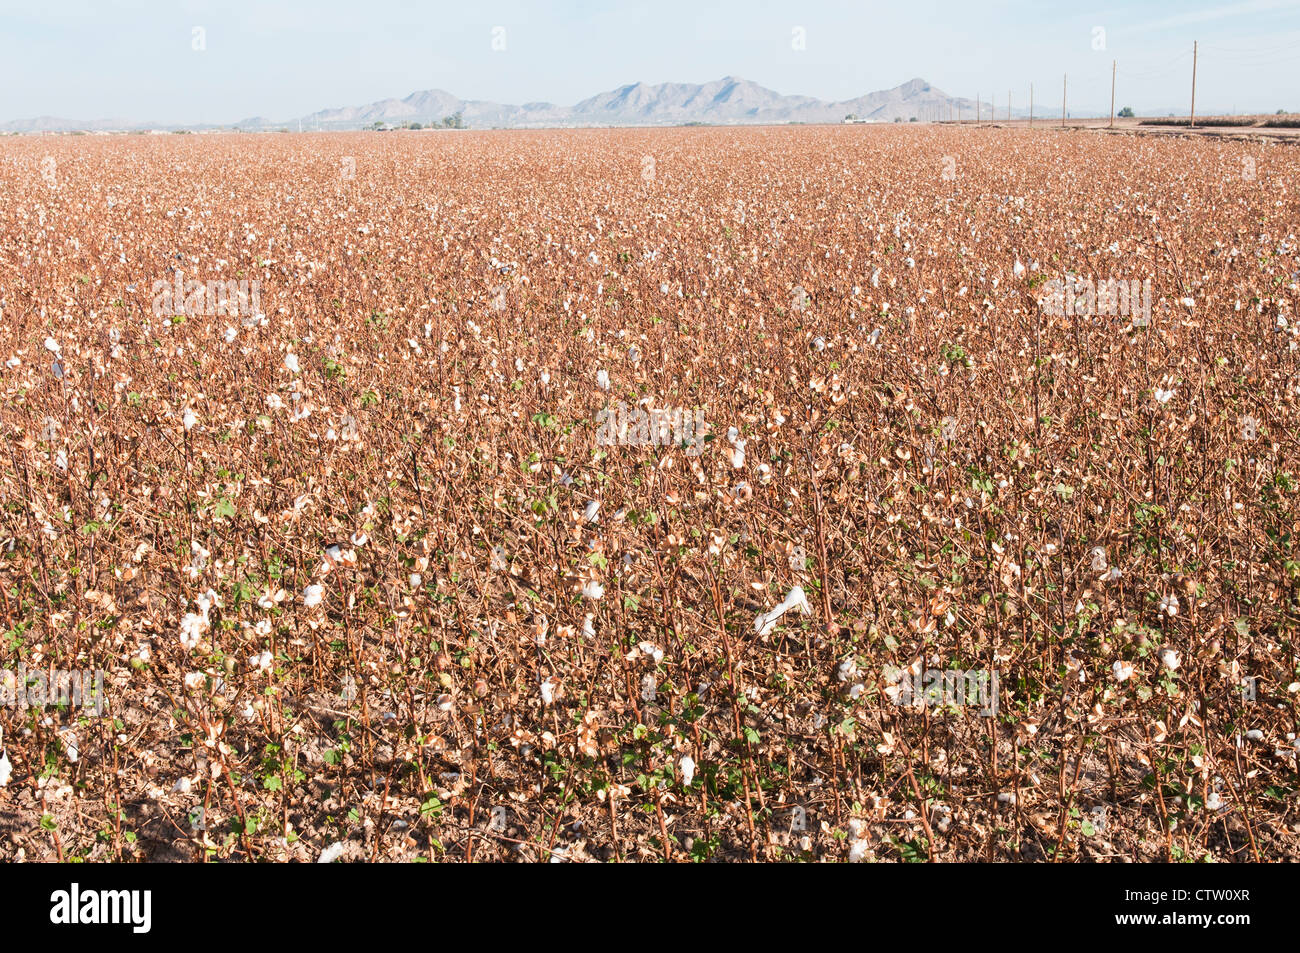 Un champ de coton récolté dans l'Arizona. Les montagnes sont indiqués dans l'arrière-plan. Banque D'Images